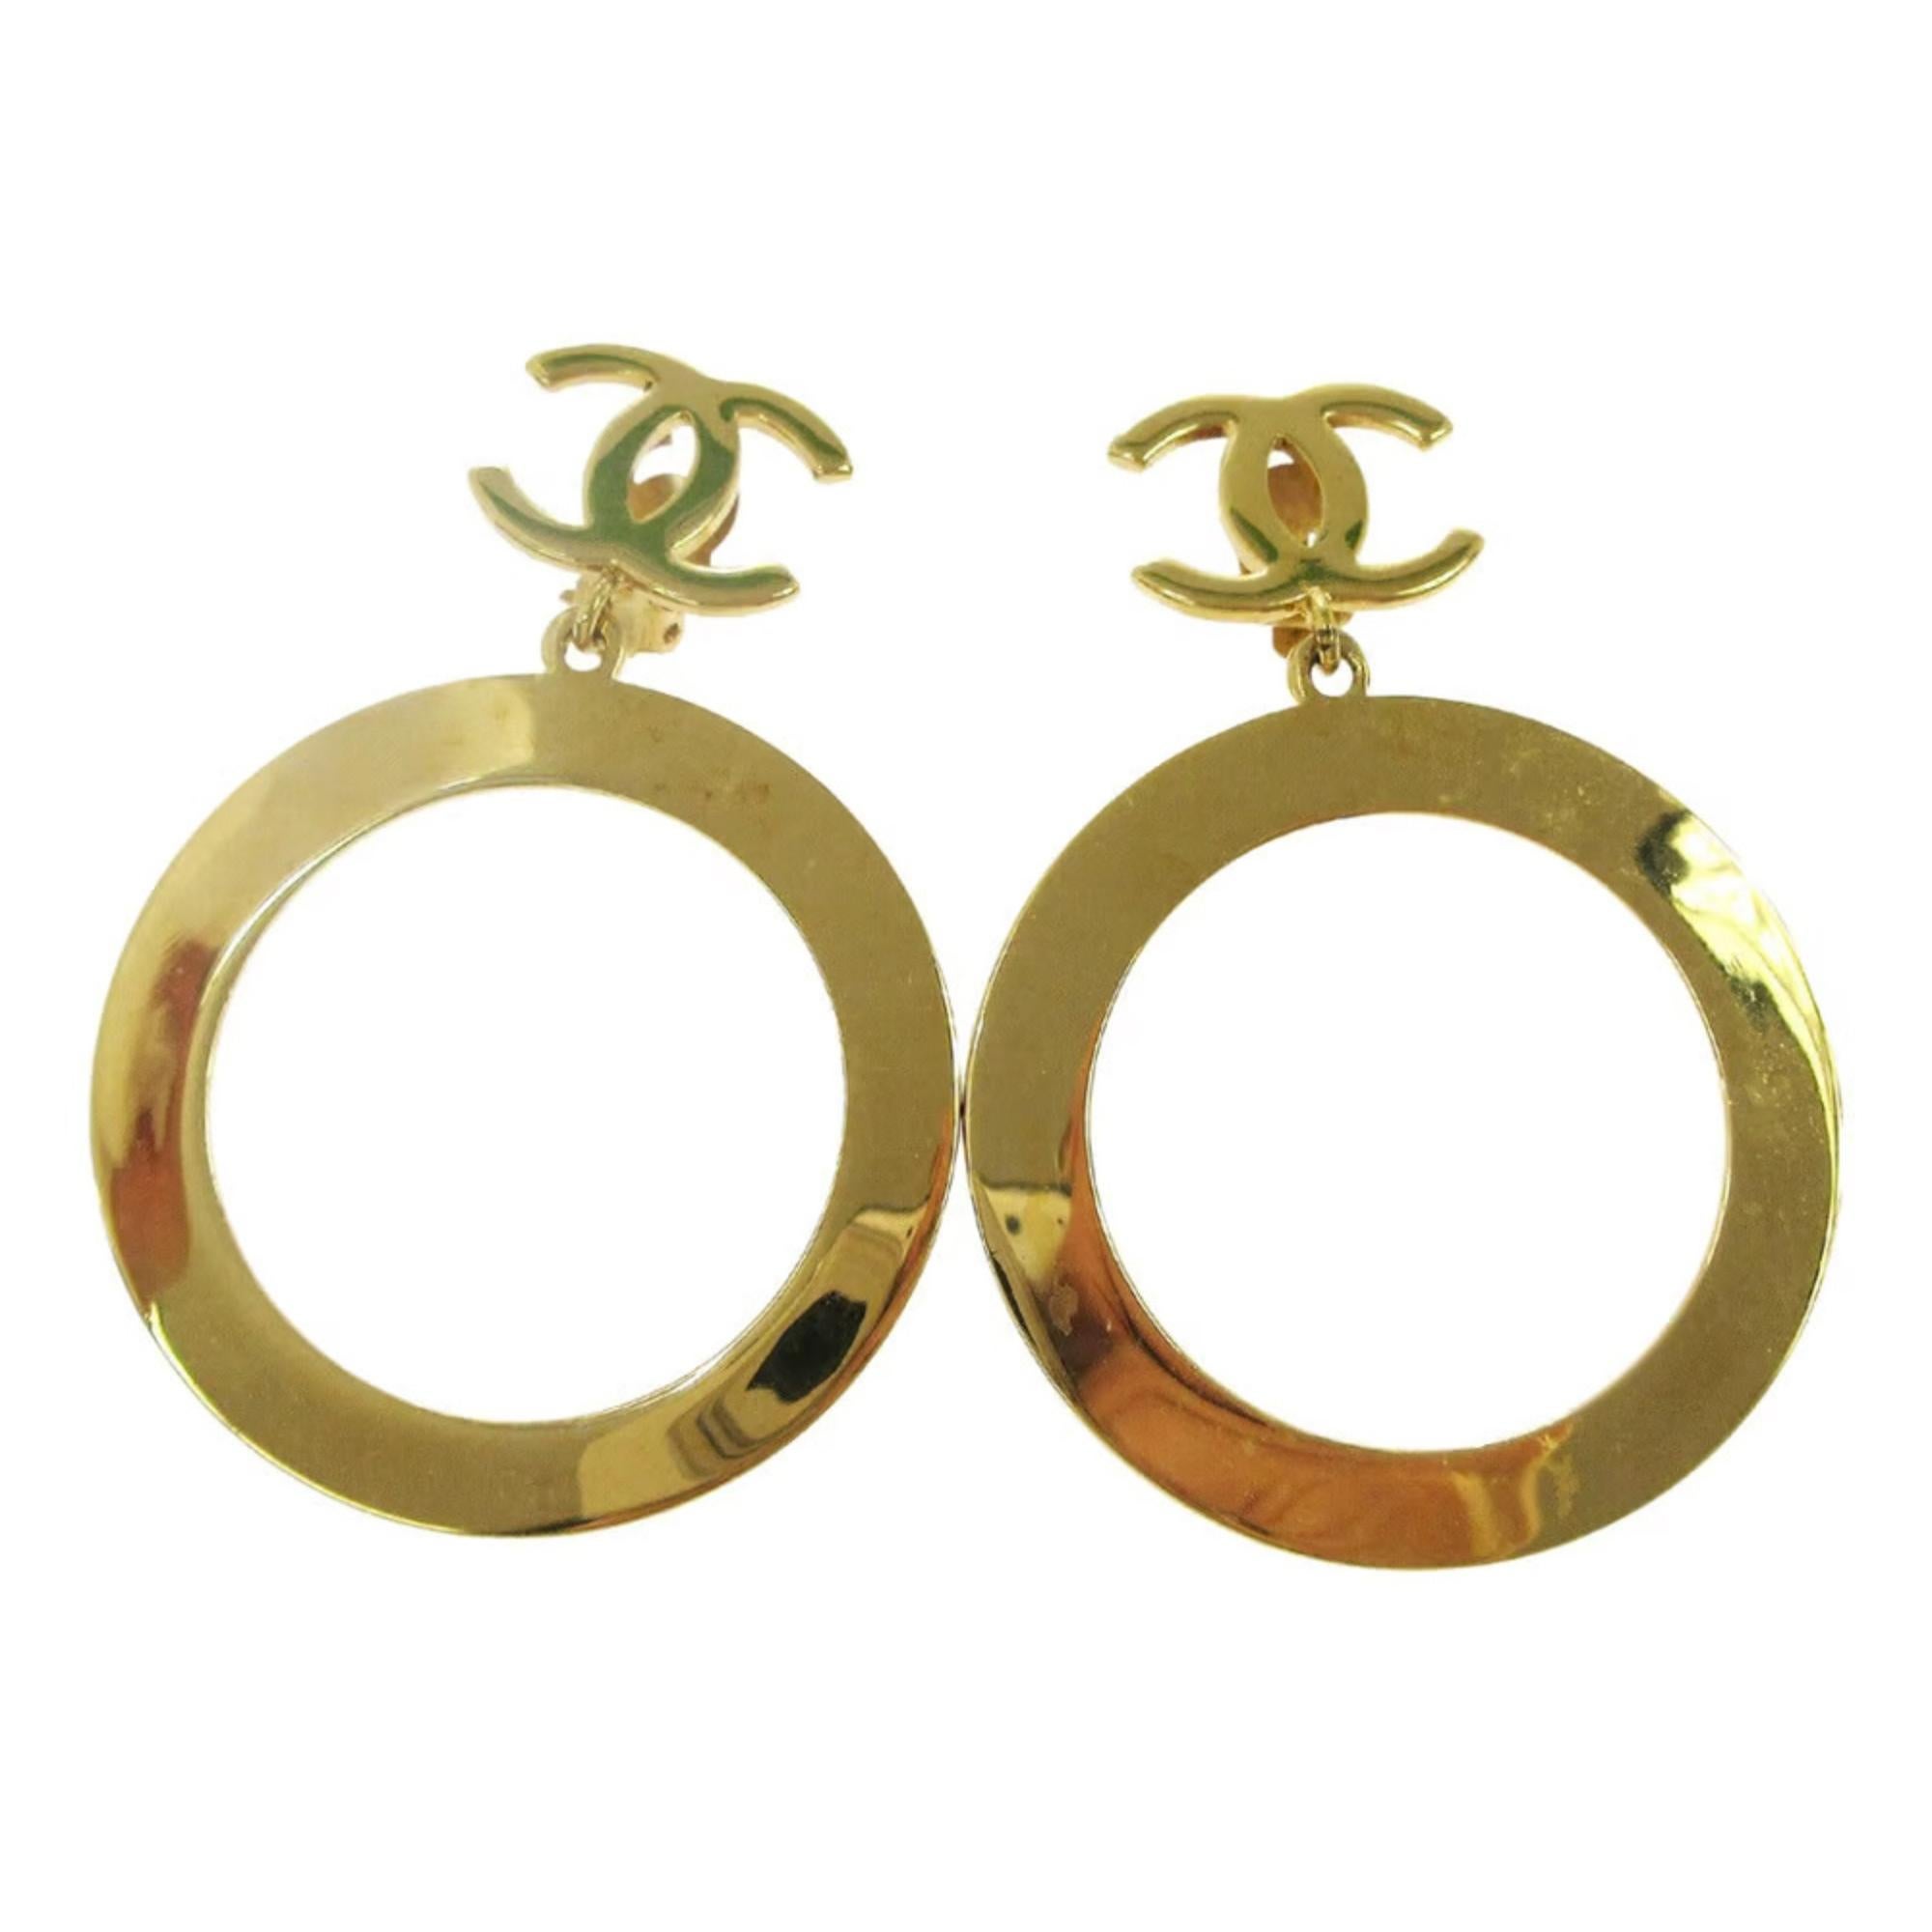 Dies ist ein authentisches Paar von Chanel CC Reifen Clip auf Ohrringe in Goldton. Diese schicken Ohrringe bestehen aus großen Goldreifen, die an einem klassischen CC-Logo hängen. 

Farbe: Gold
MATERIAL: Metall
Markenzeichen: Chanel-Logo auf der